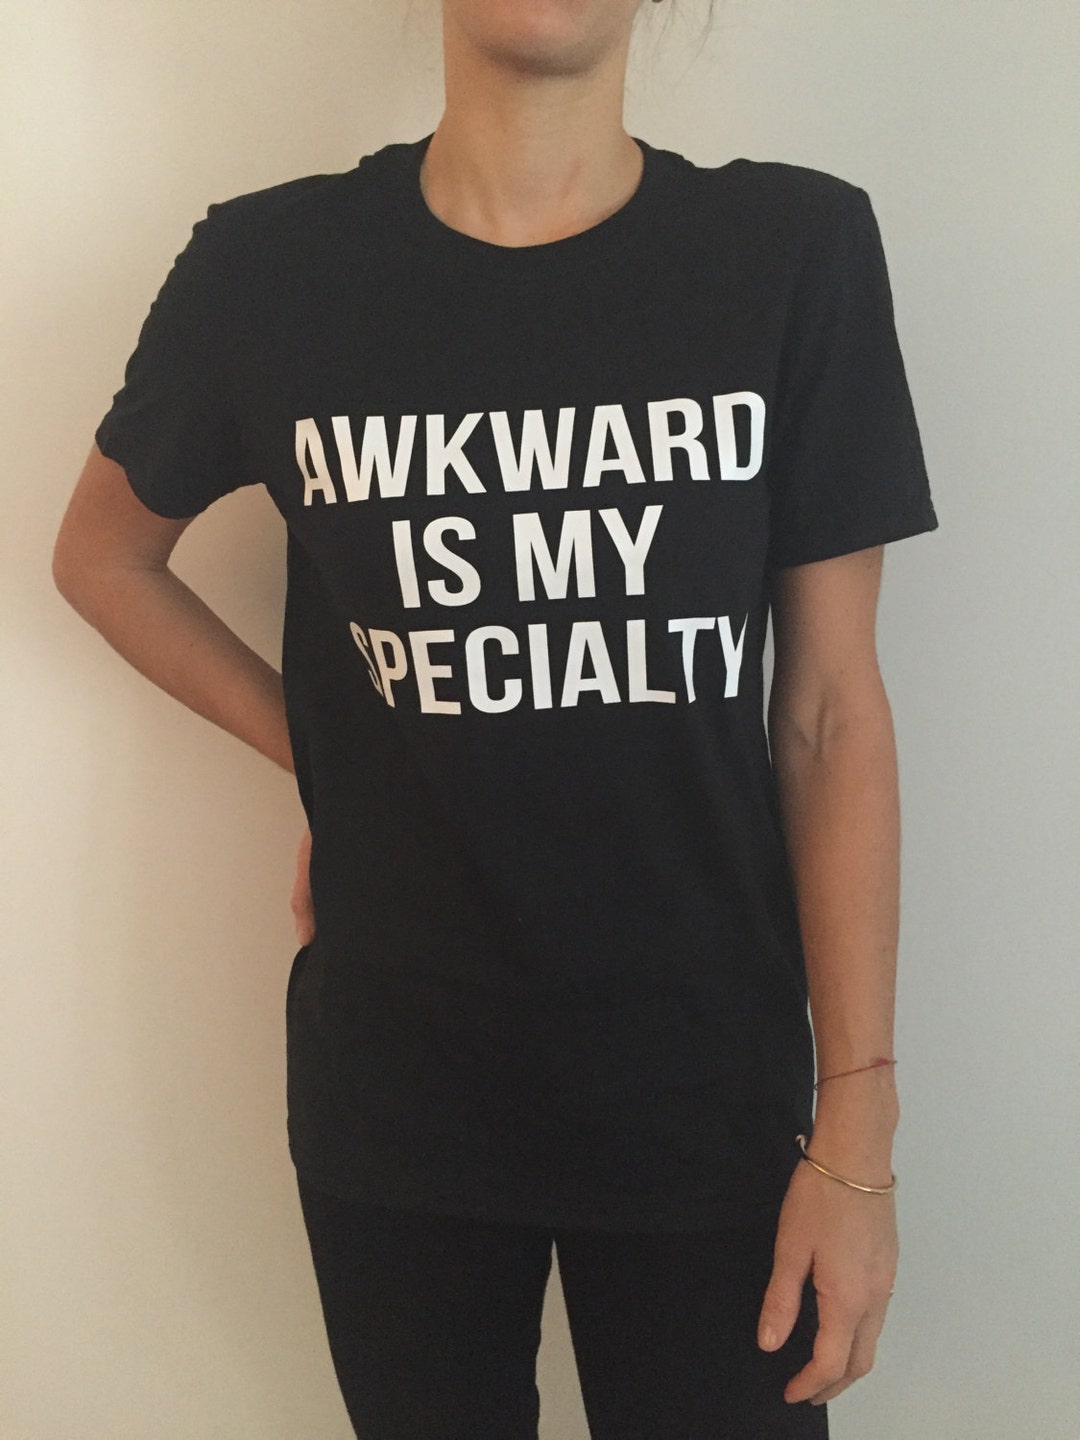 Awkward is My Specialty Tshirt Black Fashion Funny Saying - Etsy Canada